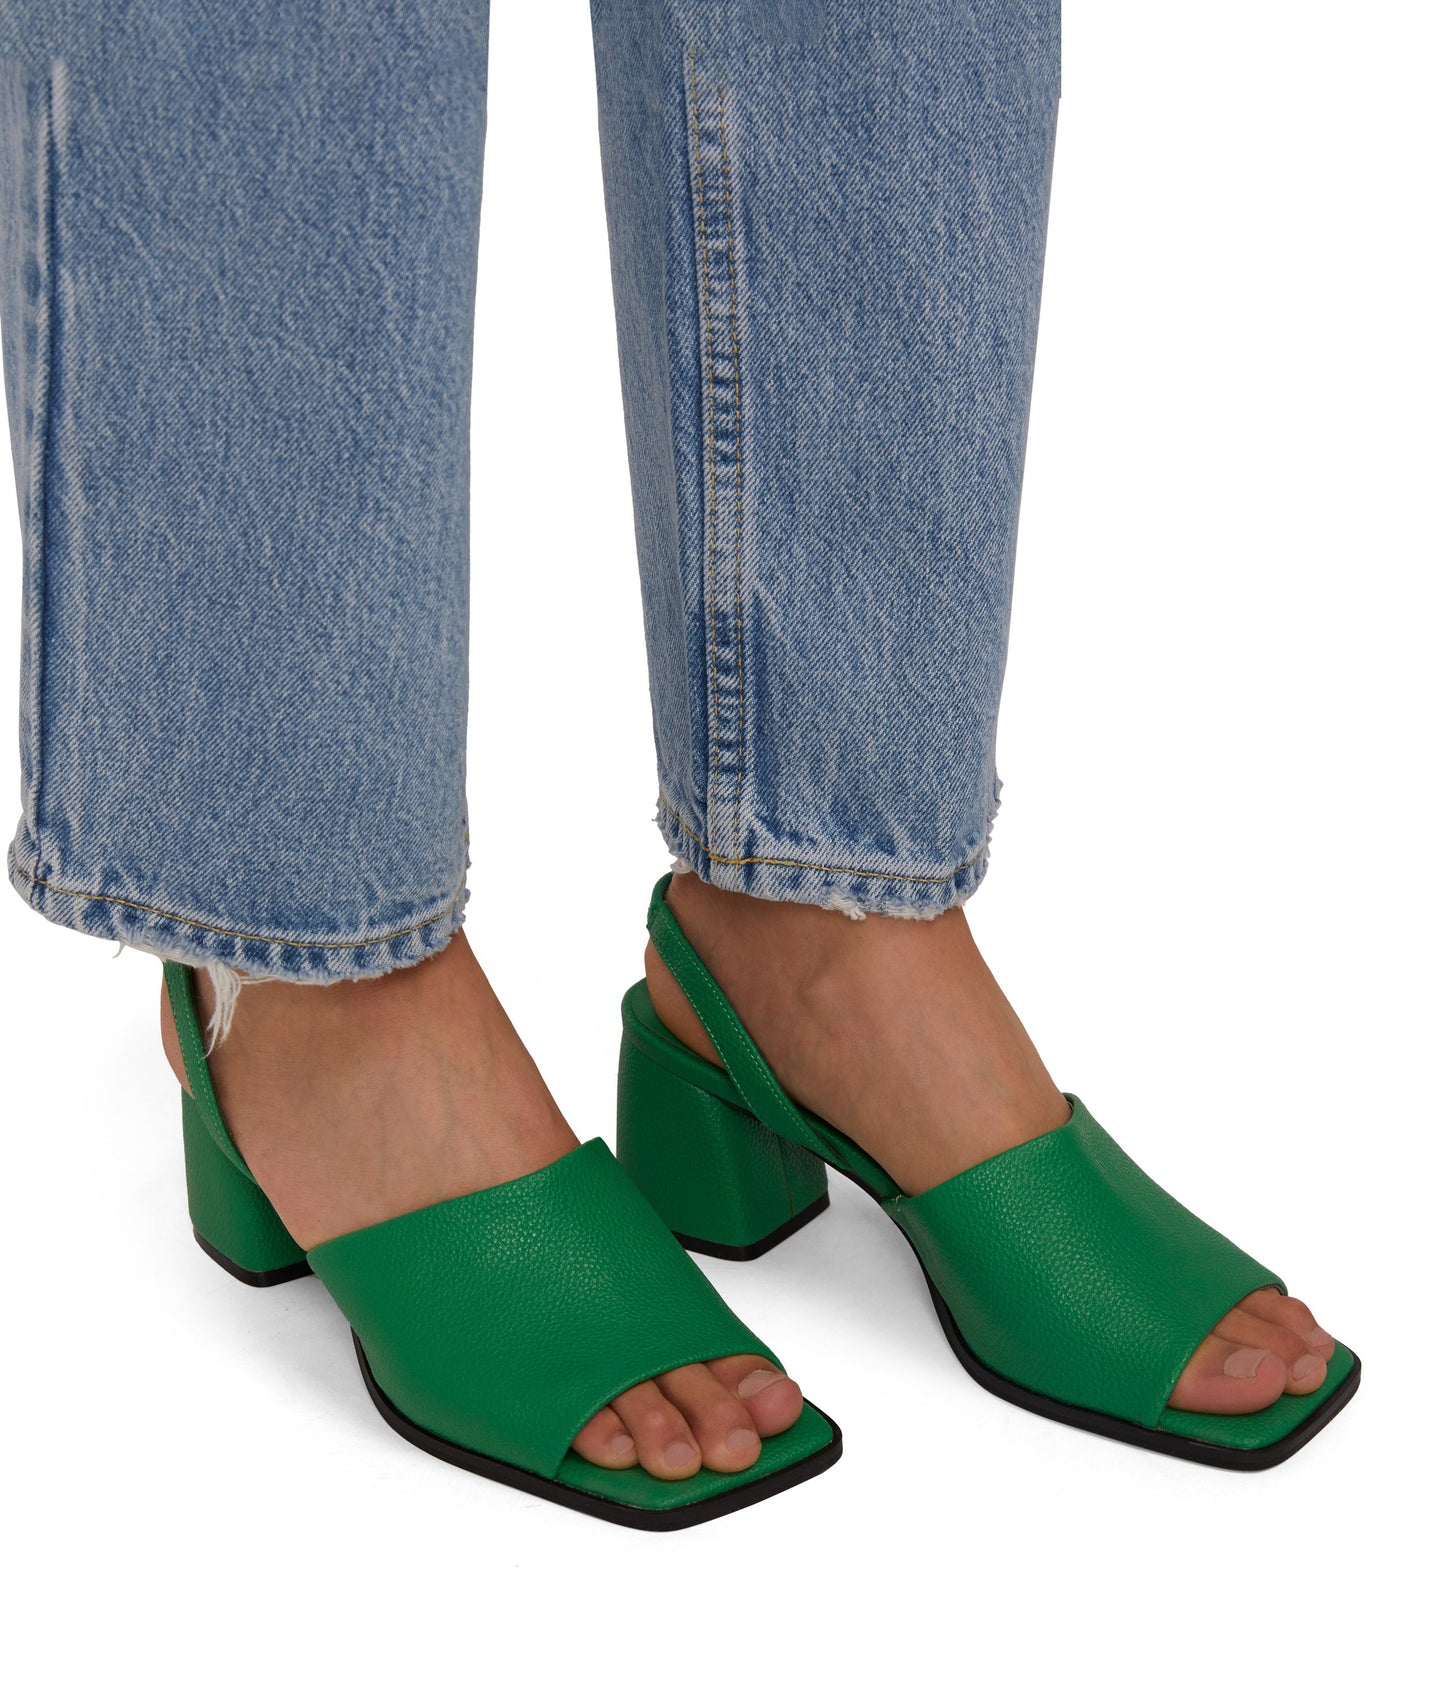 PLUME Women's Vegan Slingback Sandals | Color: White - variant::white